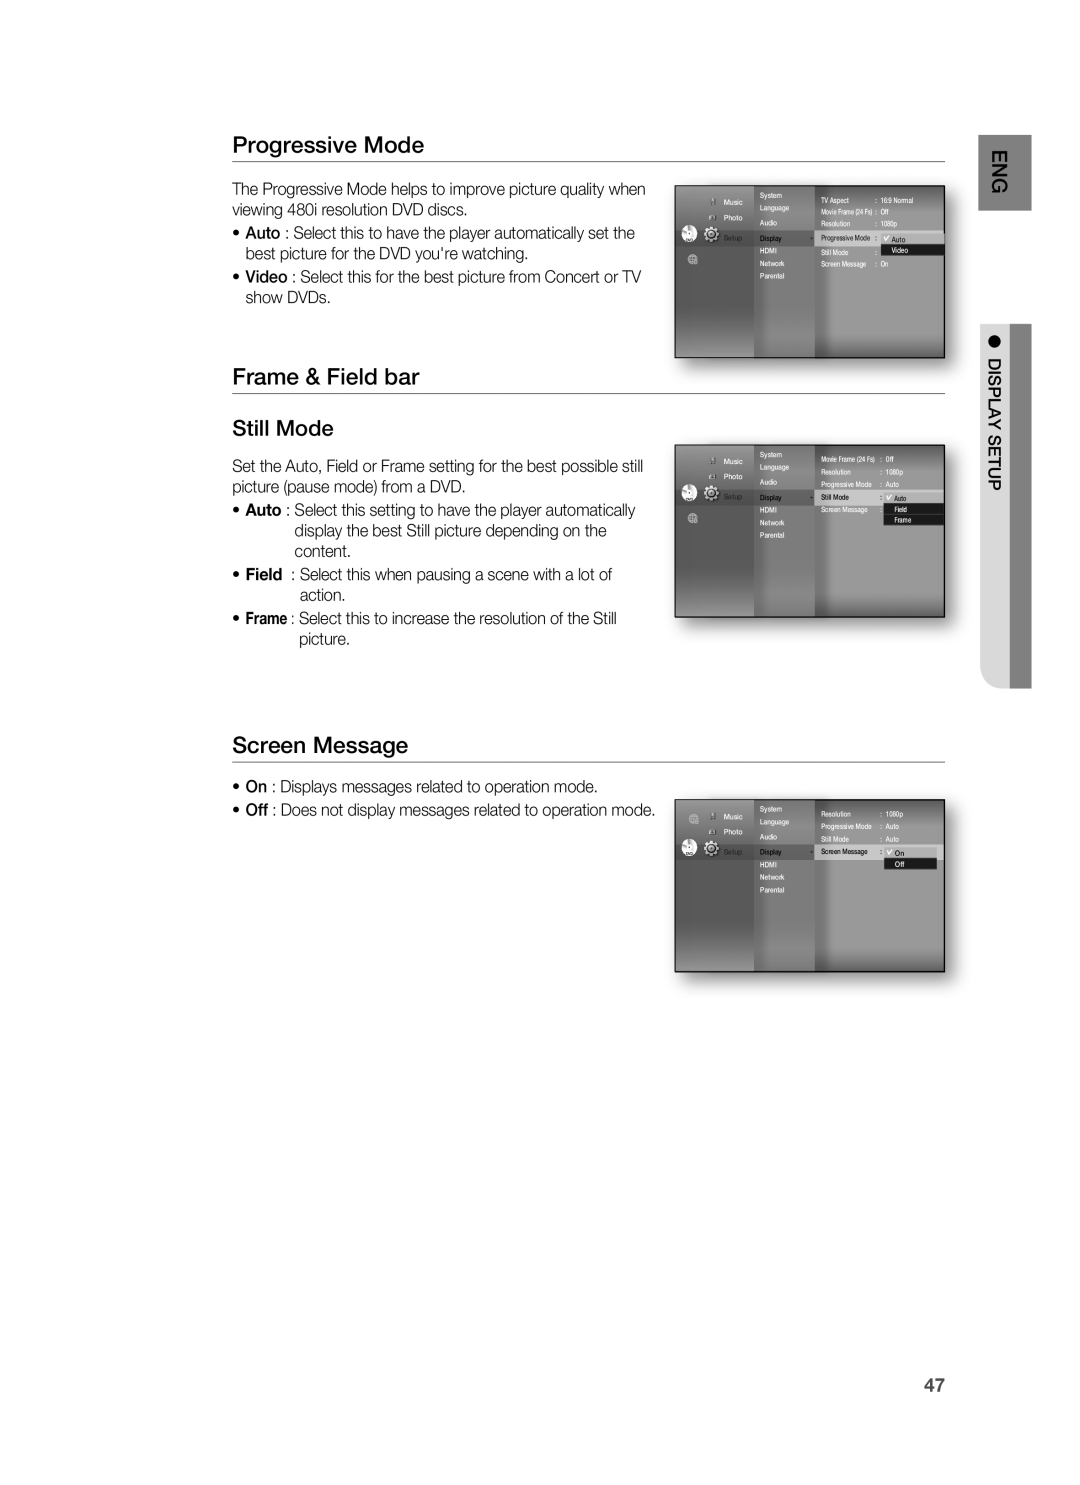 Samsung HT-BD3252 Progressive Mode, Frame & Field bar, Screen Message, Still Mode, viewing 480i resolution DVD discs 